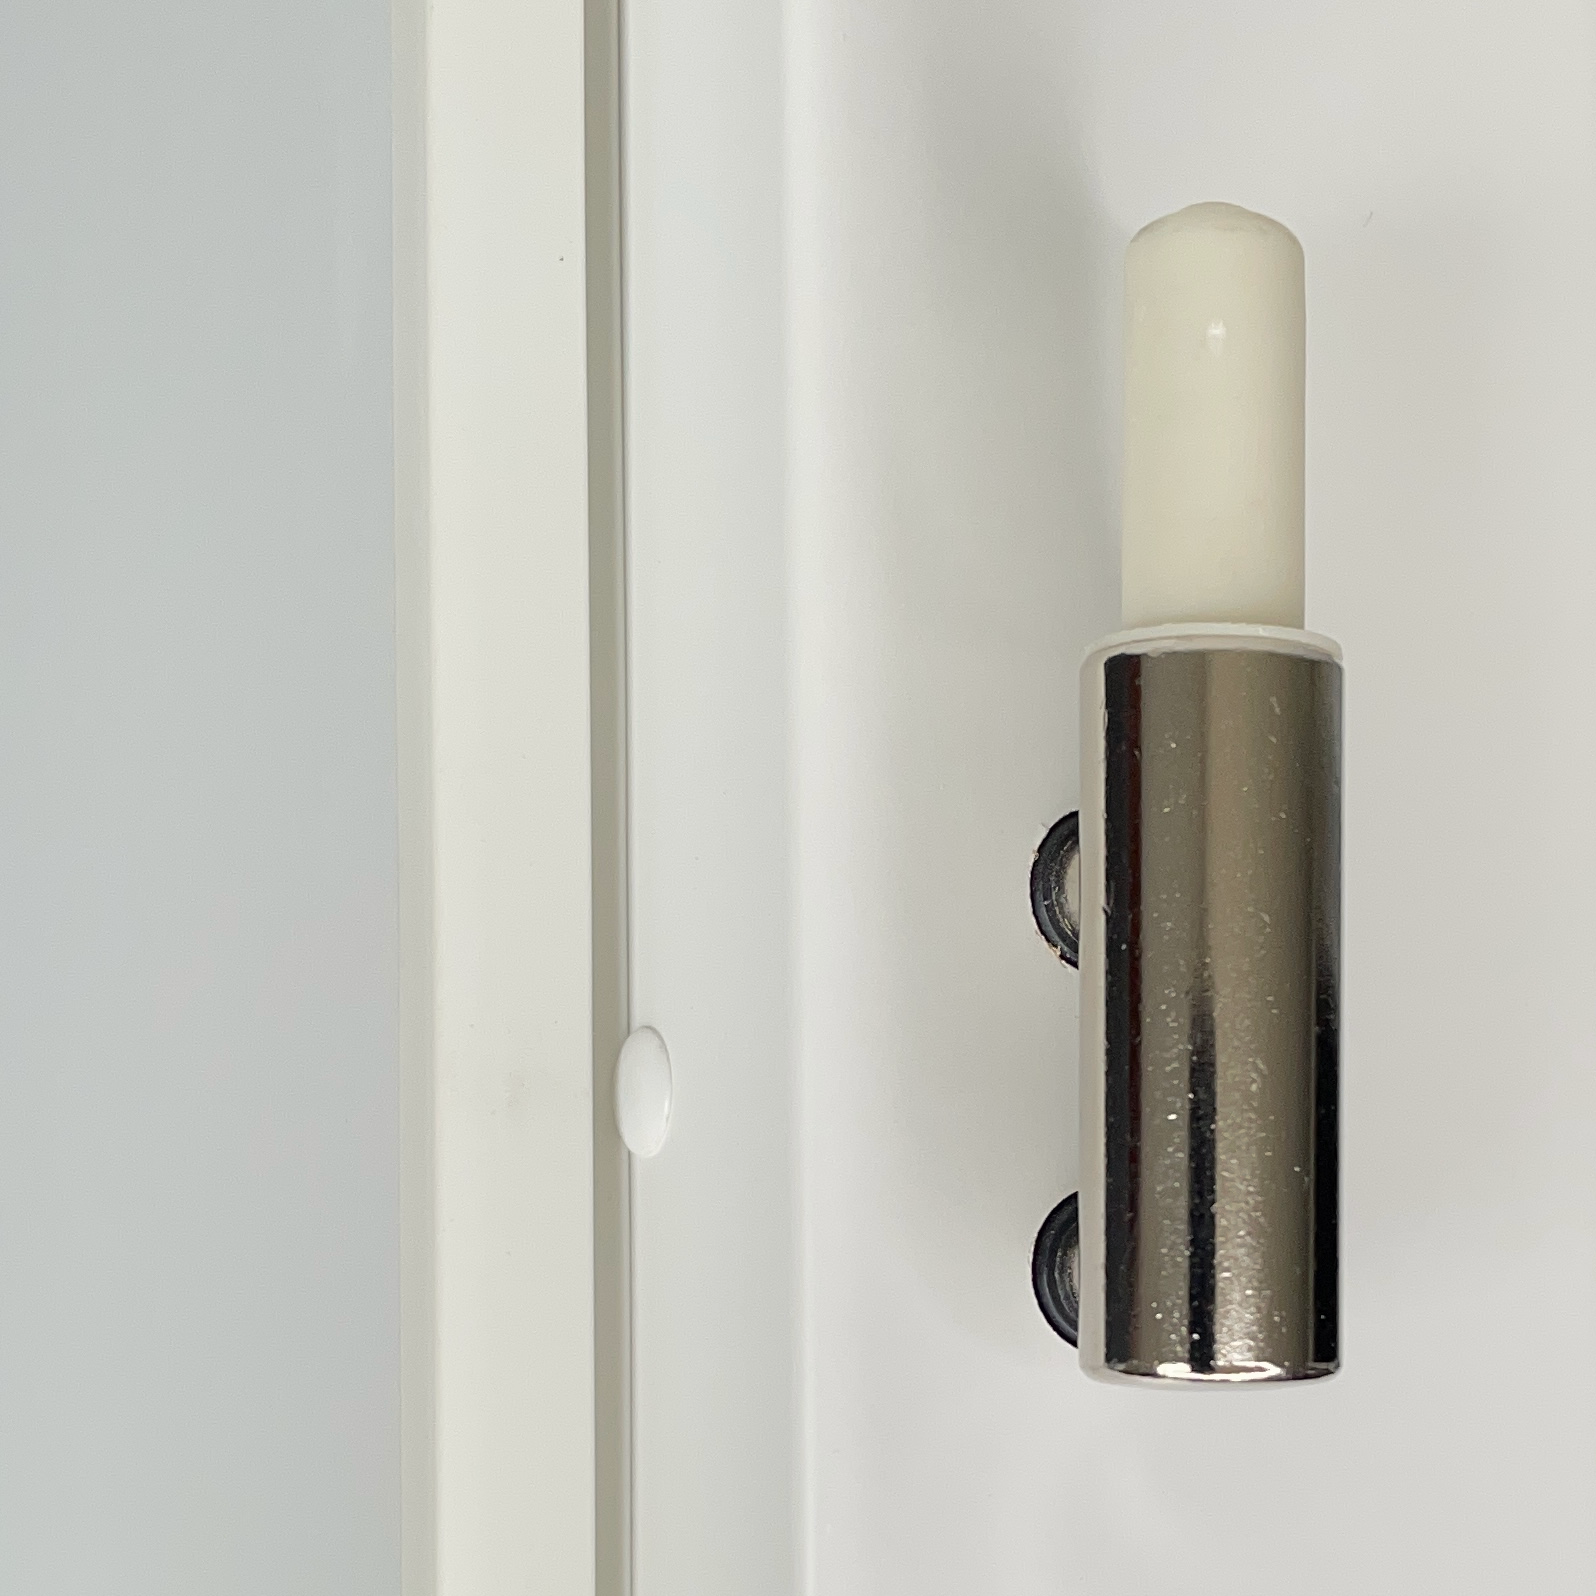 Zimmertür mit Zarge und Lichtausschnitt soft-weiß 2 breite Rillen Eckkante - Modell Designtür QB21LAS